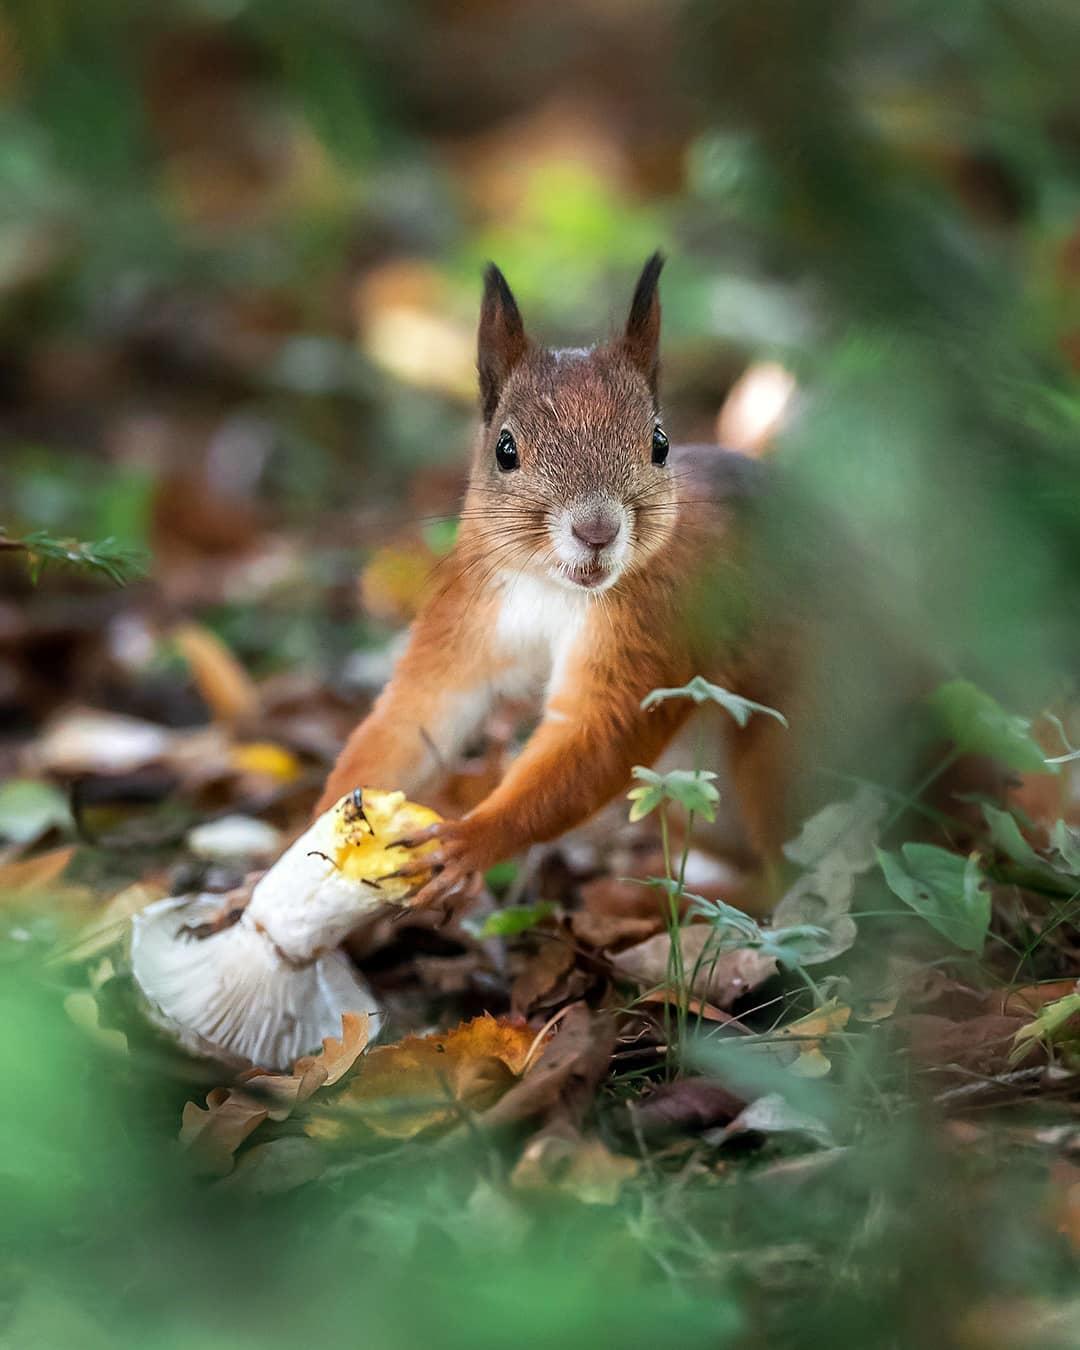  采摘蘑菇的松鼠，来自摄影师Ossi Sarrinen。 